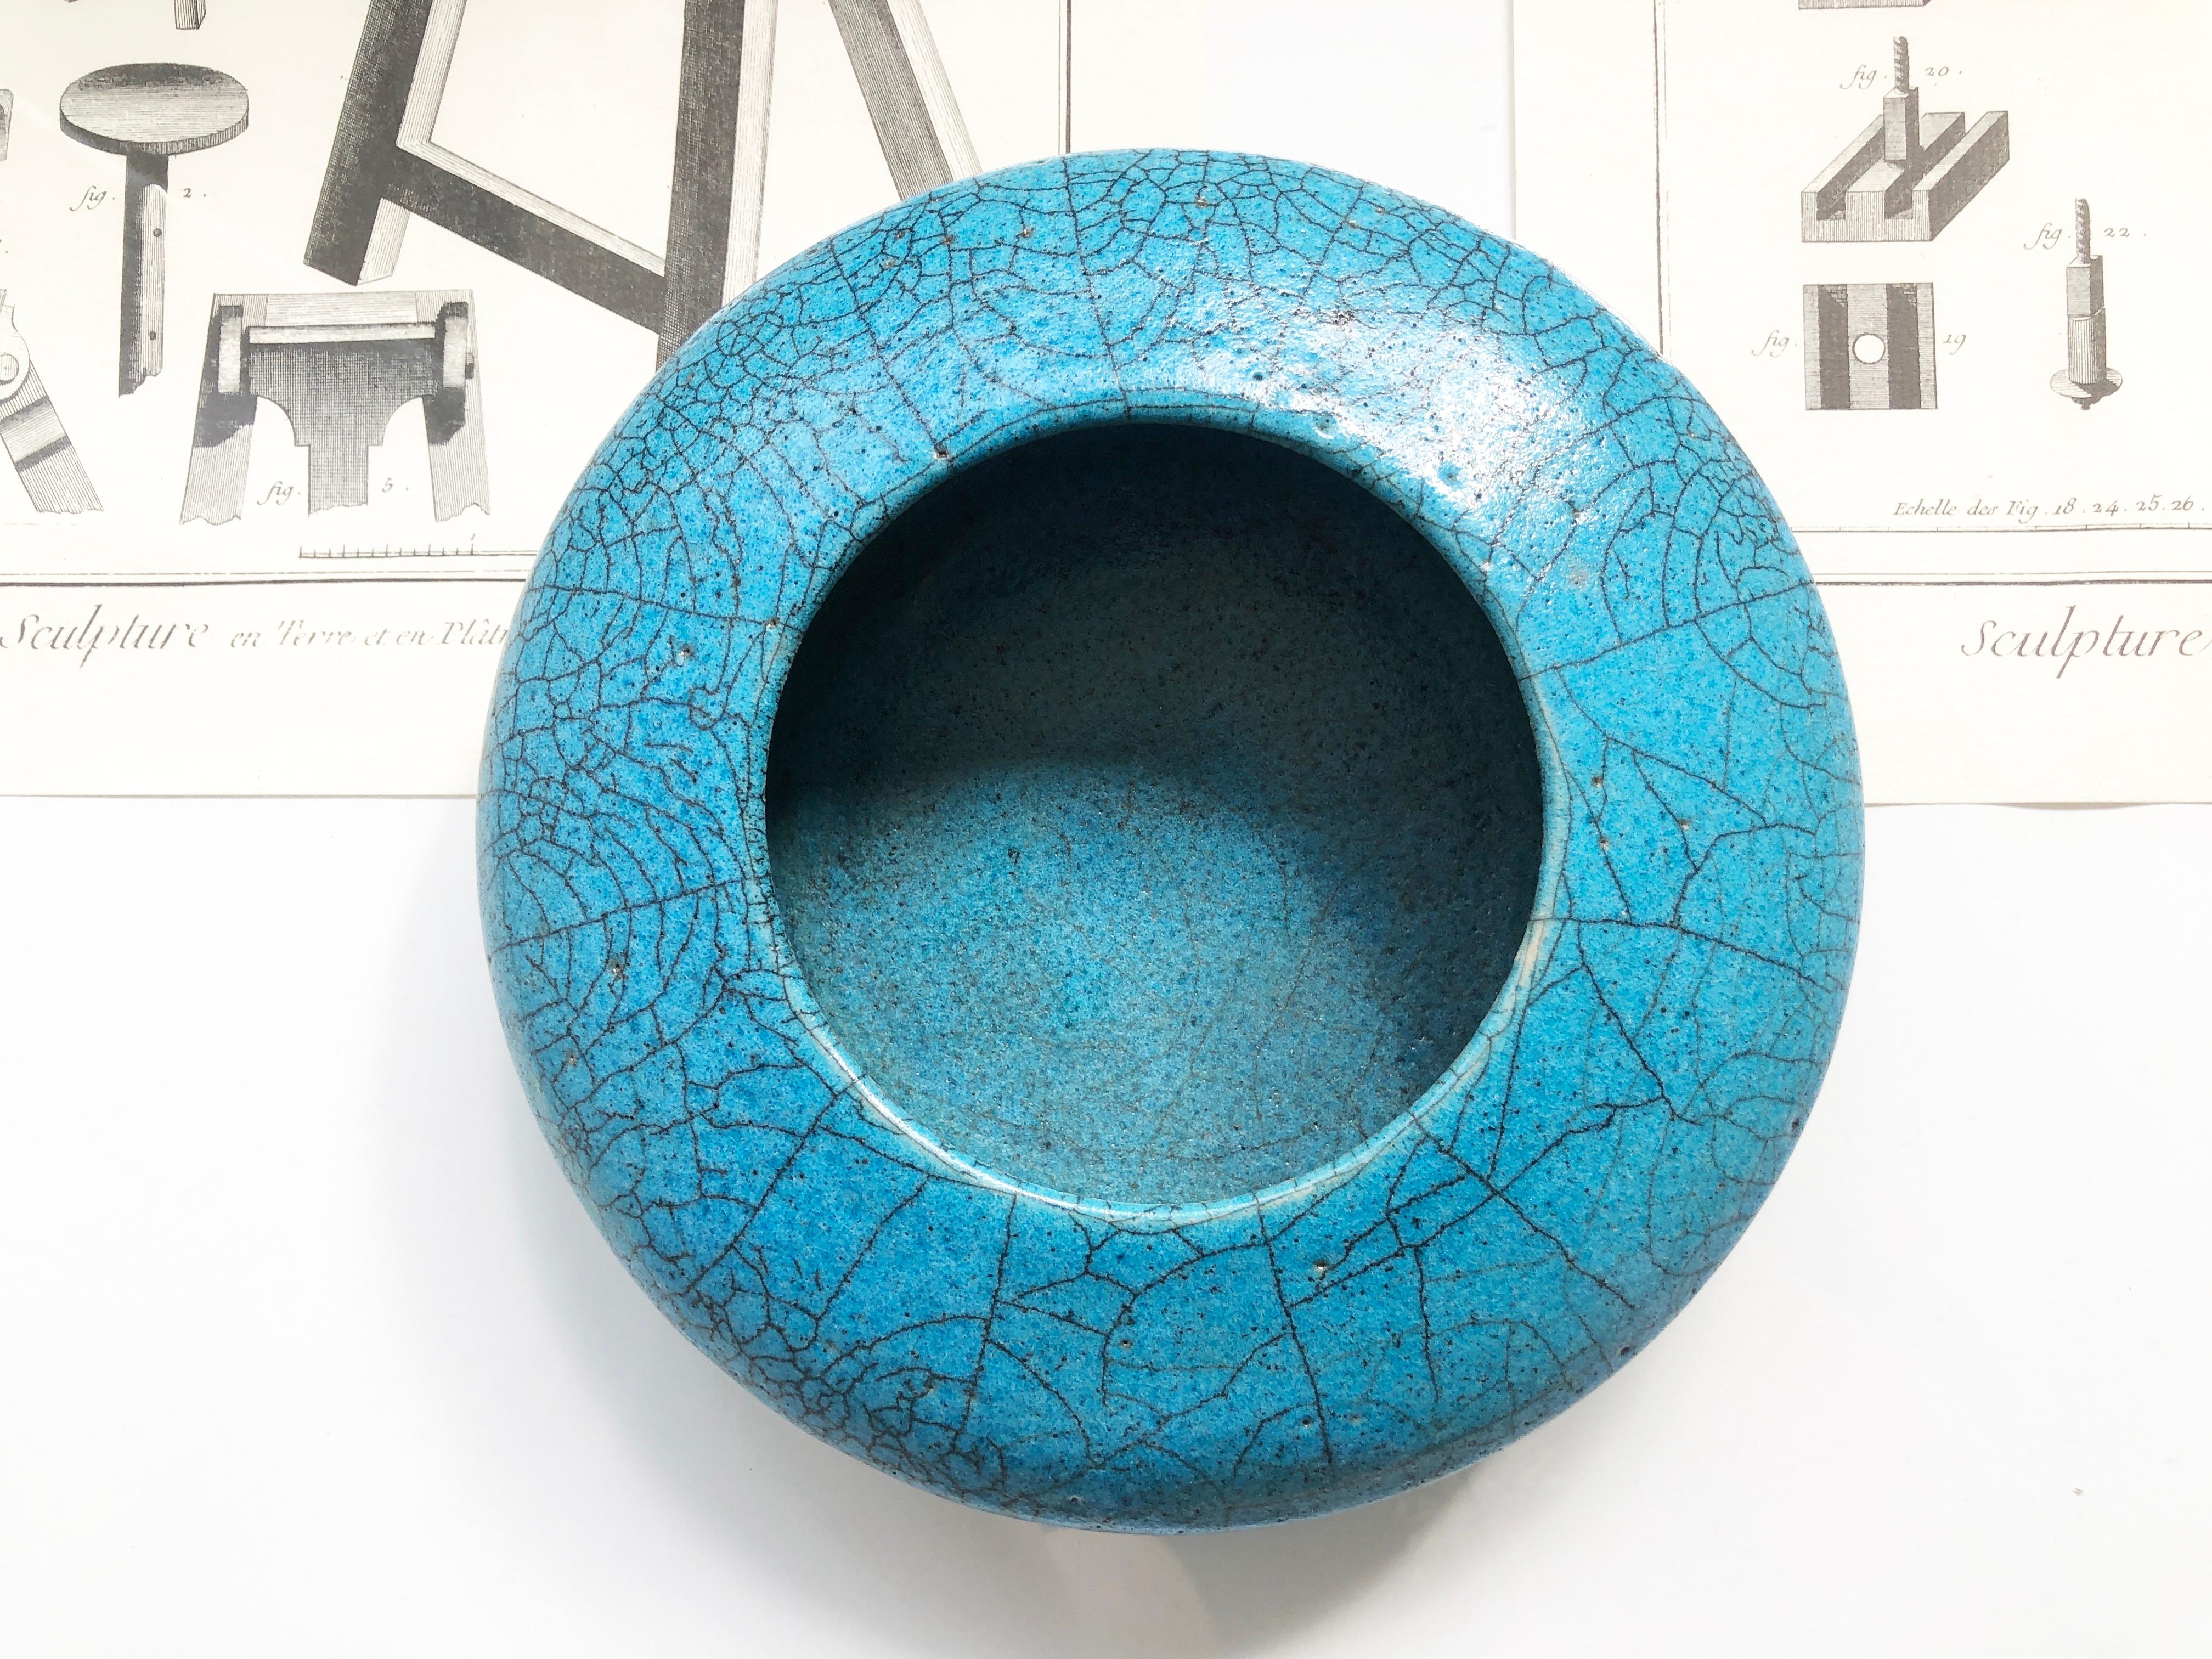 Ein wirklich ungewöhnliches Kunstwerk ist diese niedrige, scheibenförmige Schale oder Vase mit einer türkisfarbenen Raku-Glasur und fetten Lava-Andeutungen am Boden.
Der Keramiksockel zeigt das tiefe Holzkohleschwarz des Grundmaterials.
Die